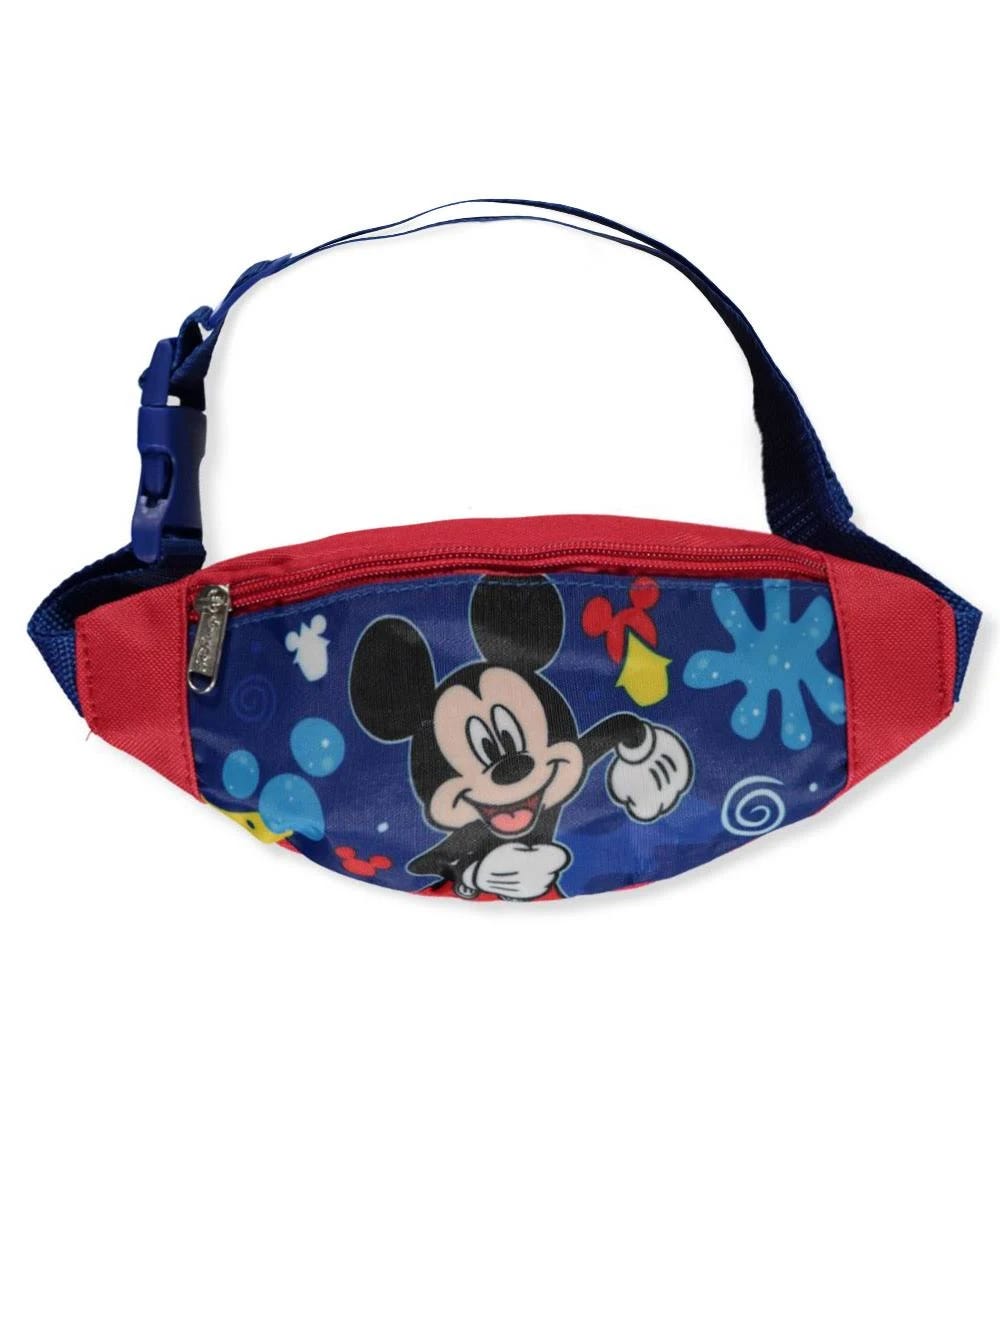 Disney Mickey Mouse Adjustable Belt Bag | Image